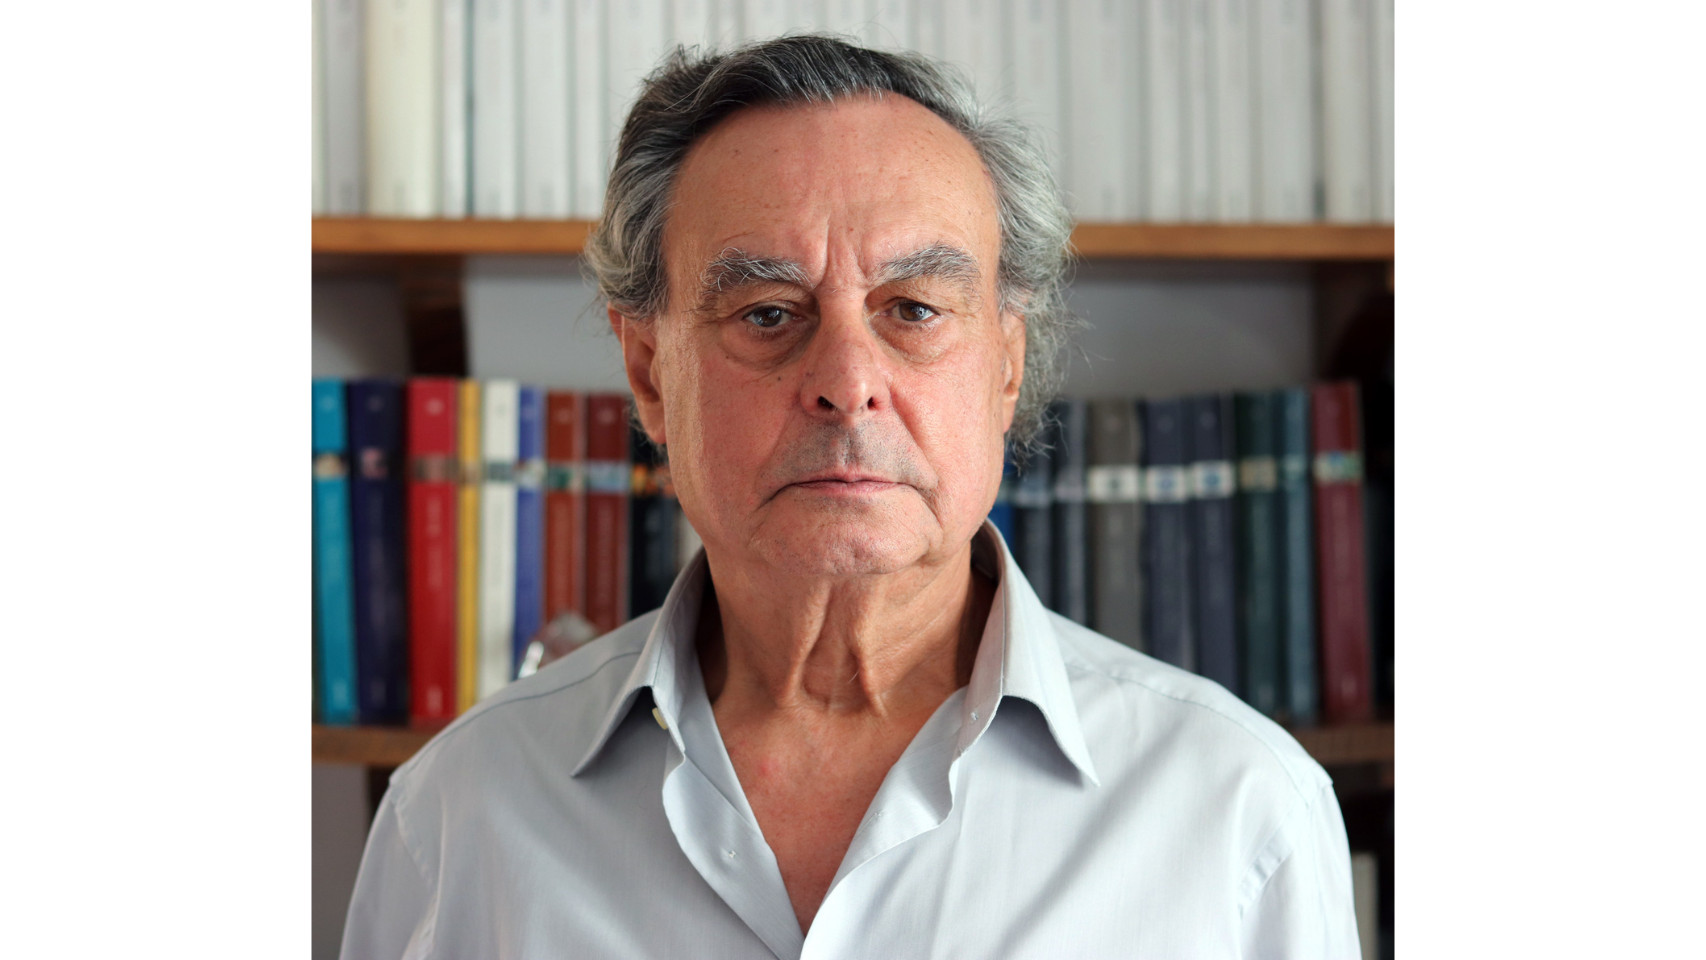 Francisco Javier Elola Somoza